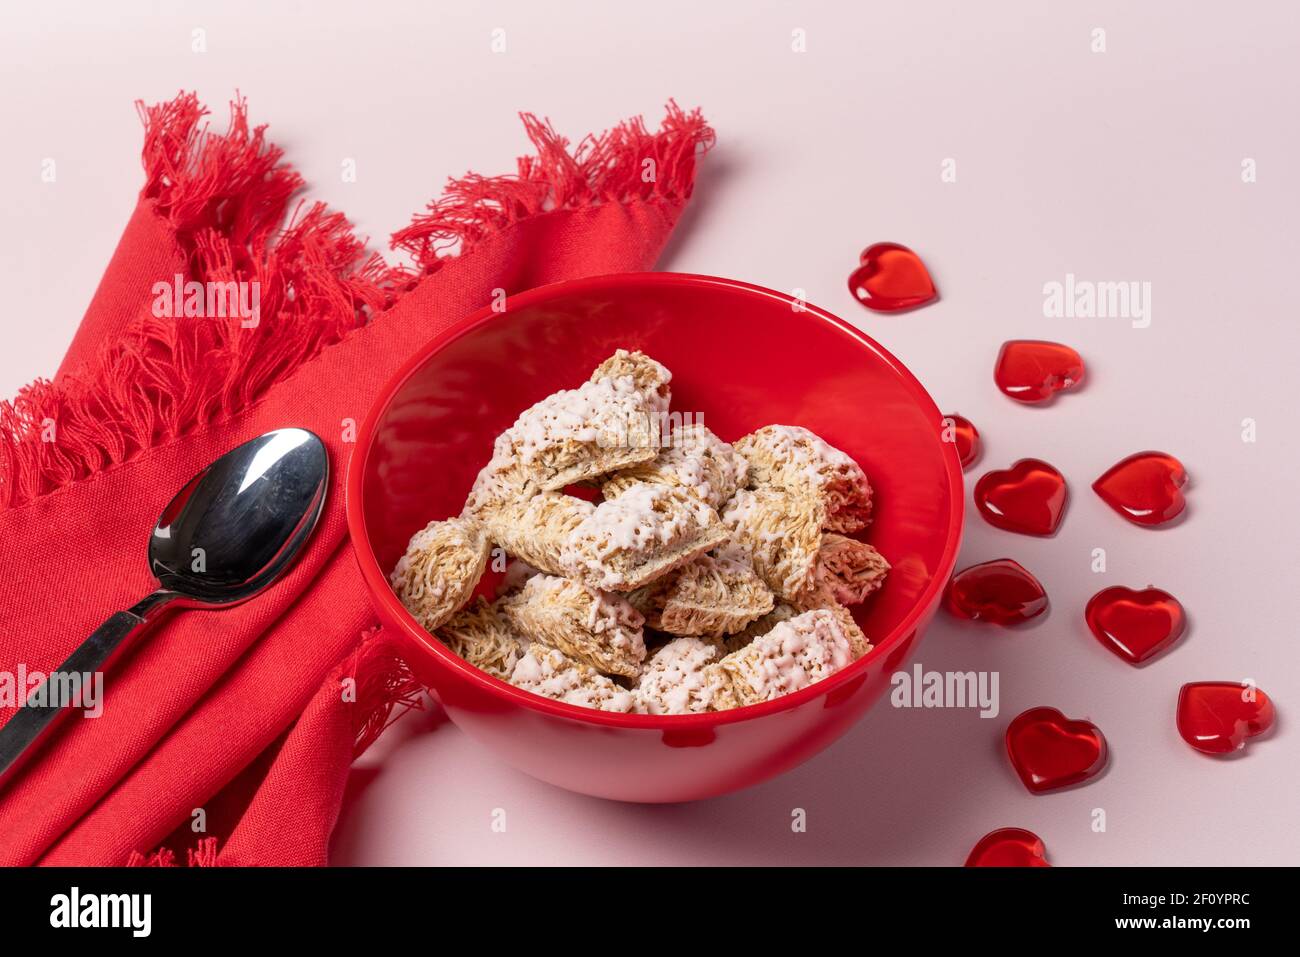 colazione romantica o valentina con ciotola rossa di cereali di grano ghiacciati, tovagliolo e cucchiaio con tavola di cuori rossi sparso su sfondo rosa chiaro Foto Stock